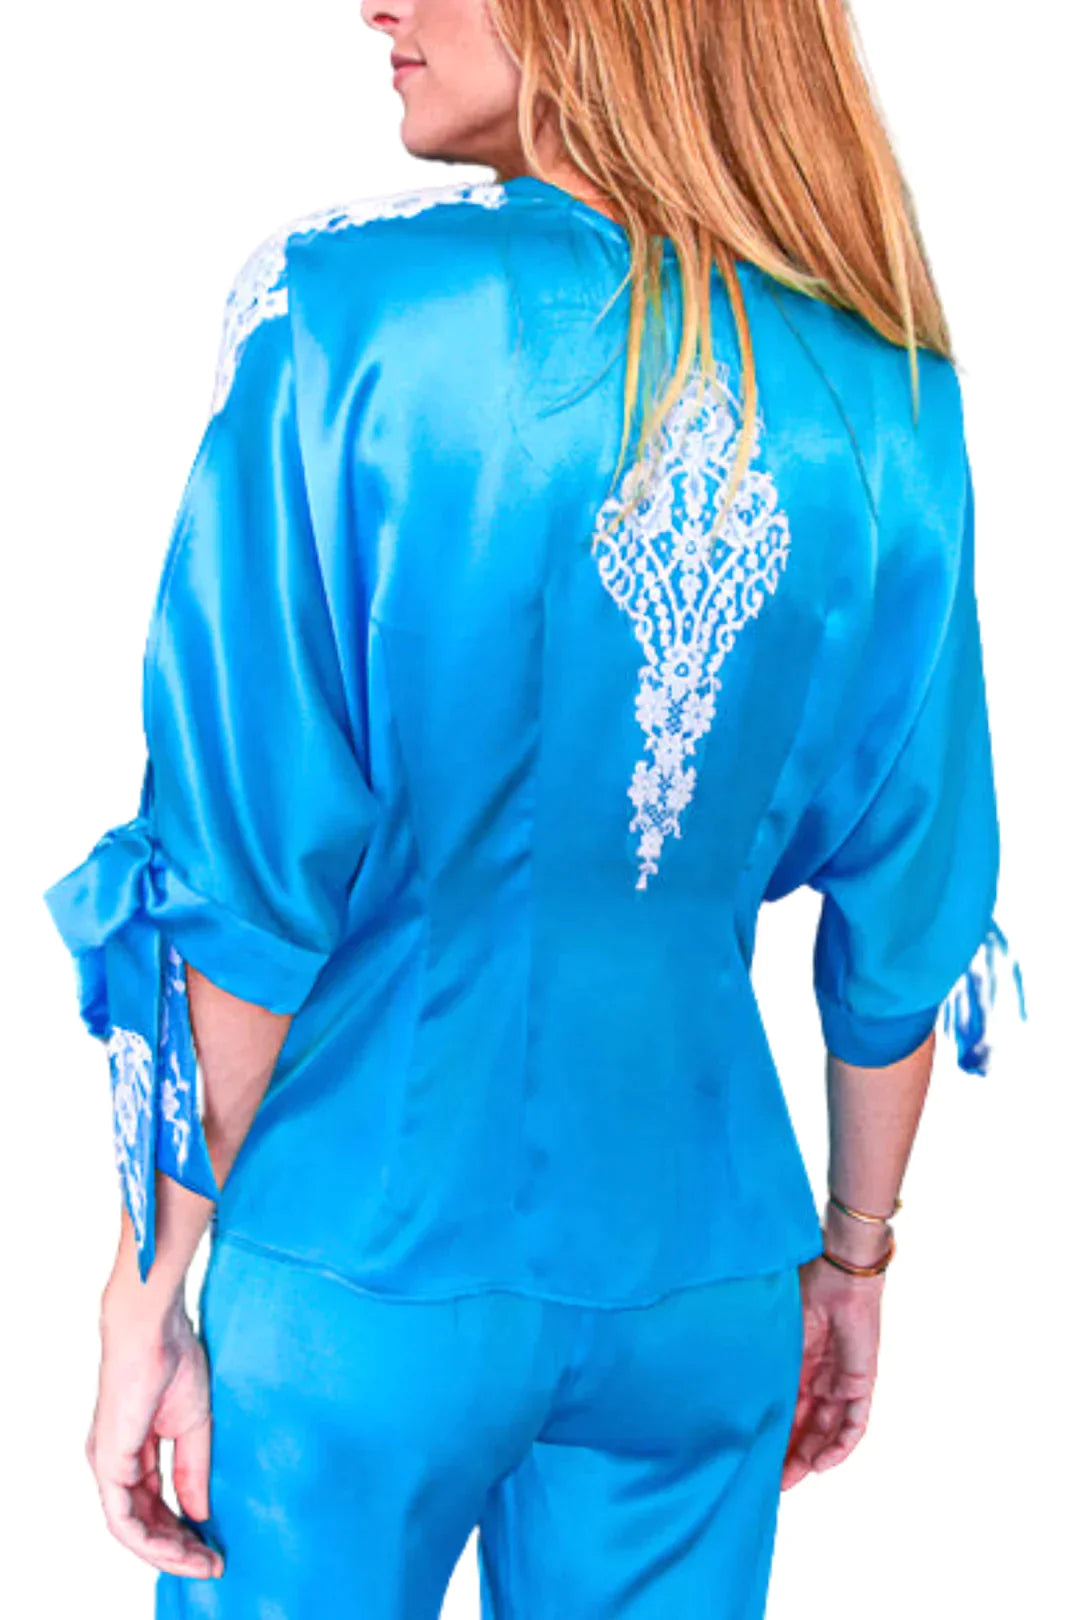 Vanita Rosa Blouse Neo Silk - Premium Shirts & Tops from Marina St Barth - Just $699! Shop now at Marina St Barth